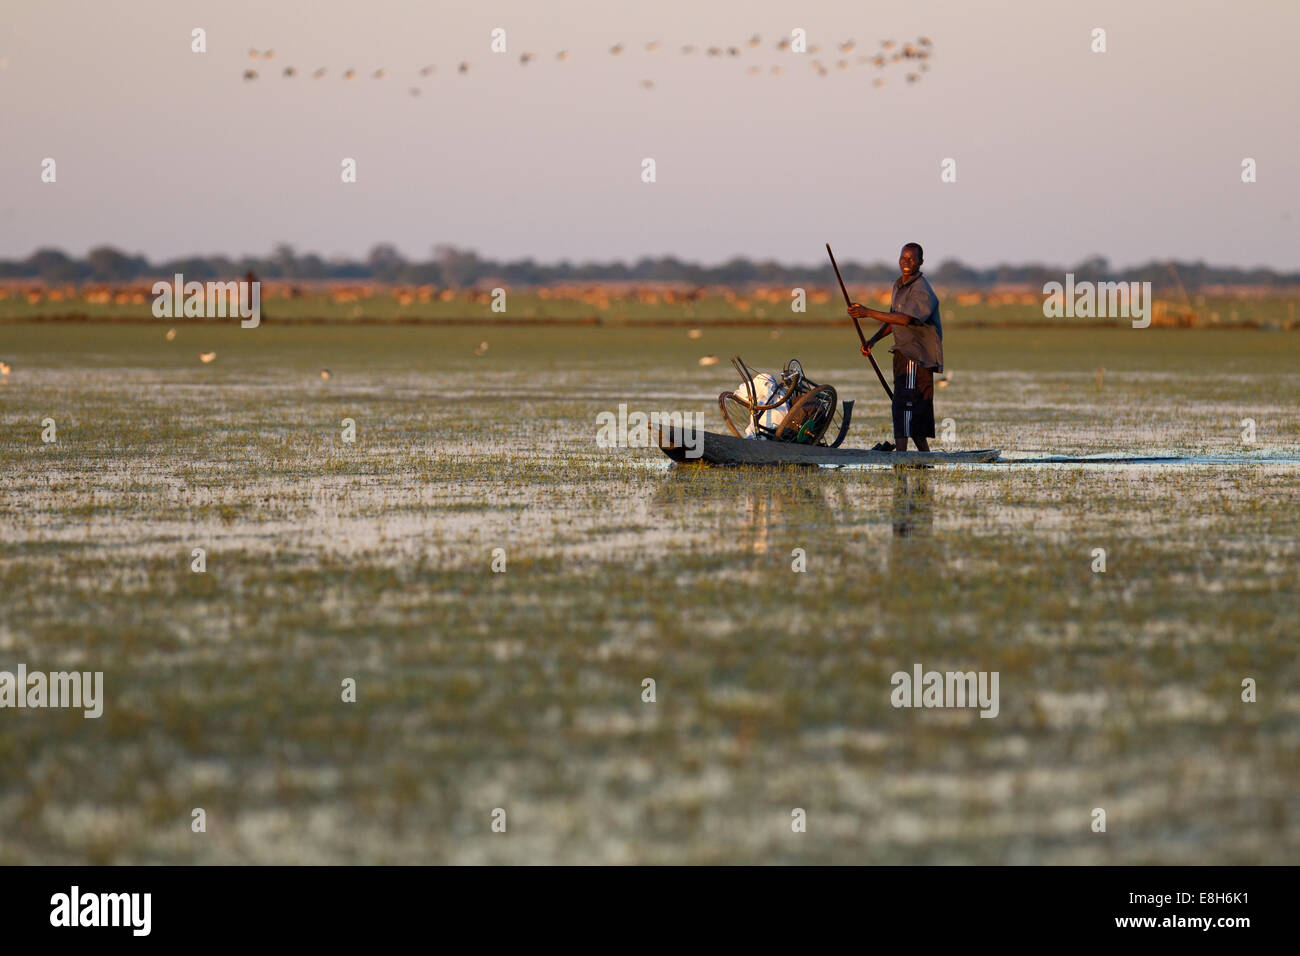 Un pêcheur se glisse dans l'eau en Jiménez-montealegre une pirogue dans les zones humides, la Zambie Bangweulu Banque D'Images